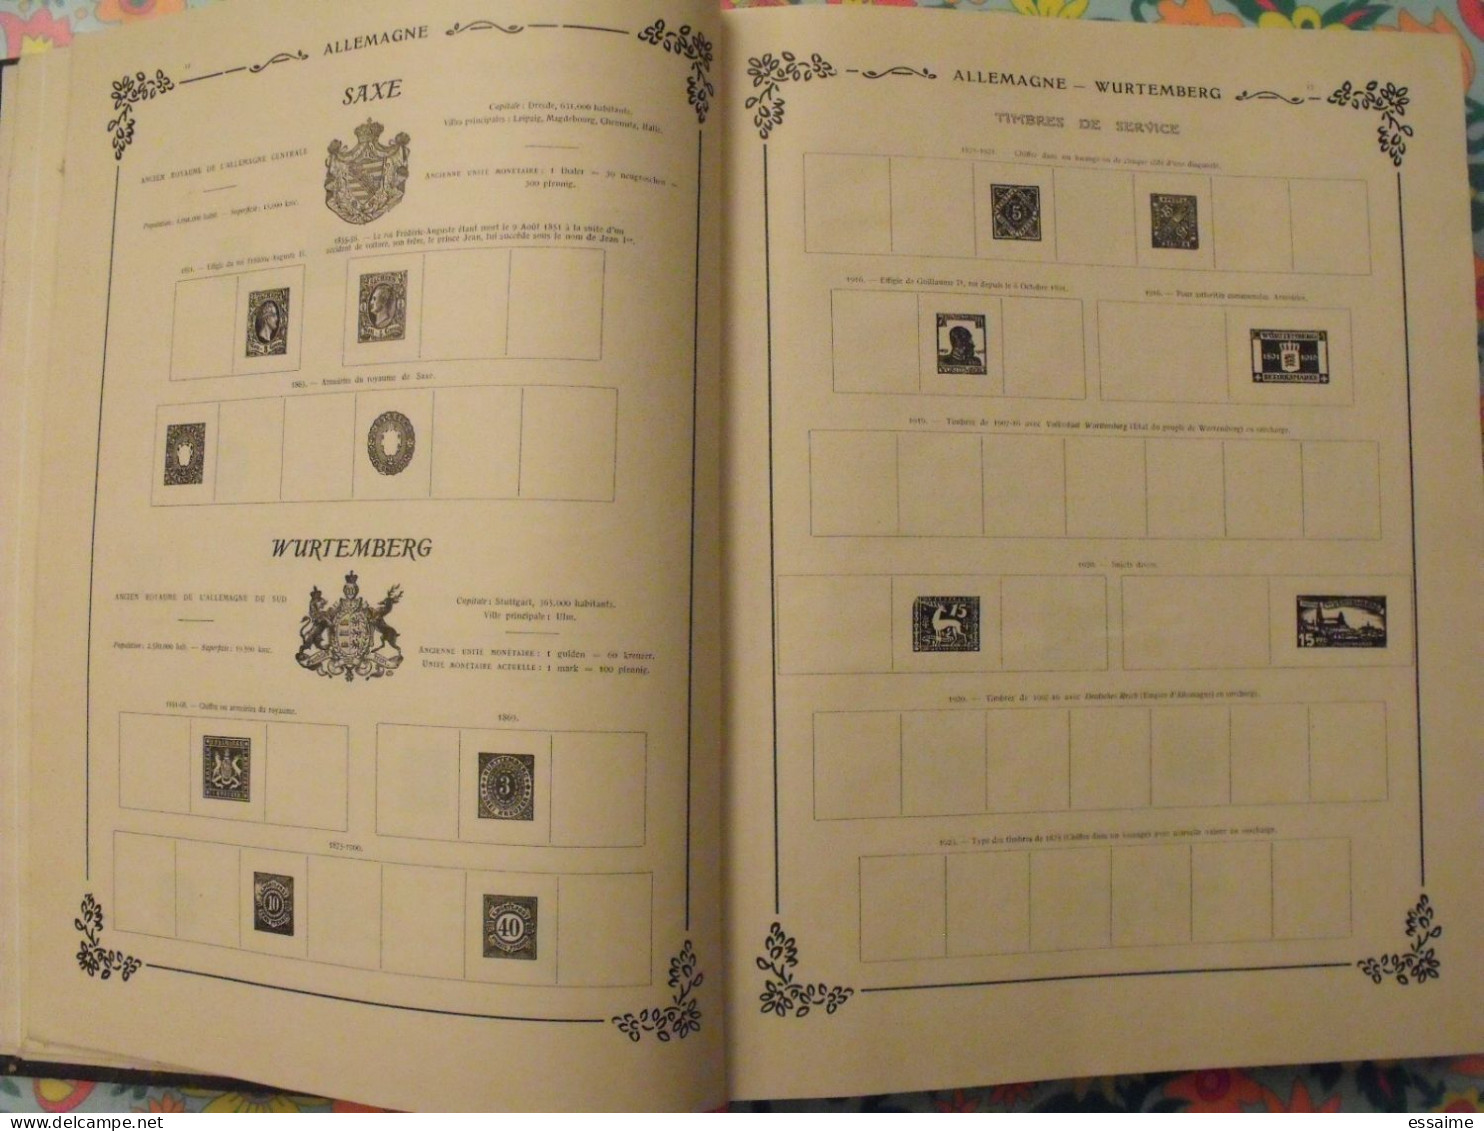 album historique et géographique de timbres-poste Yvert et Tellier, 13 ème édition, 1935